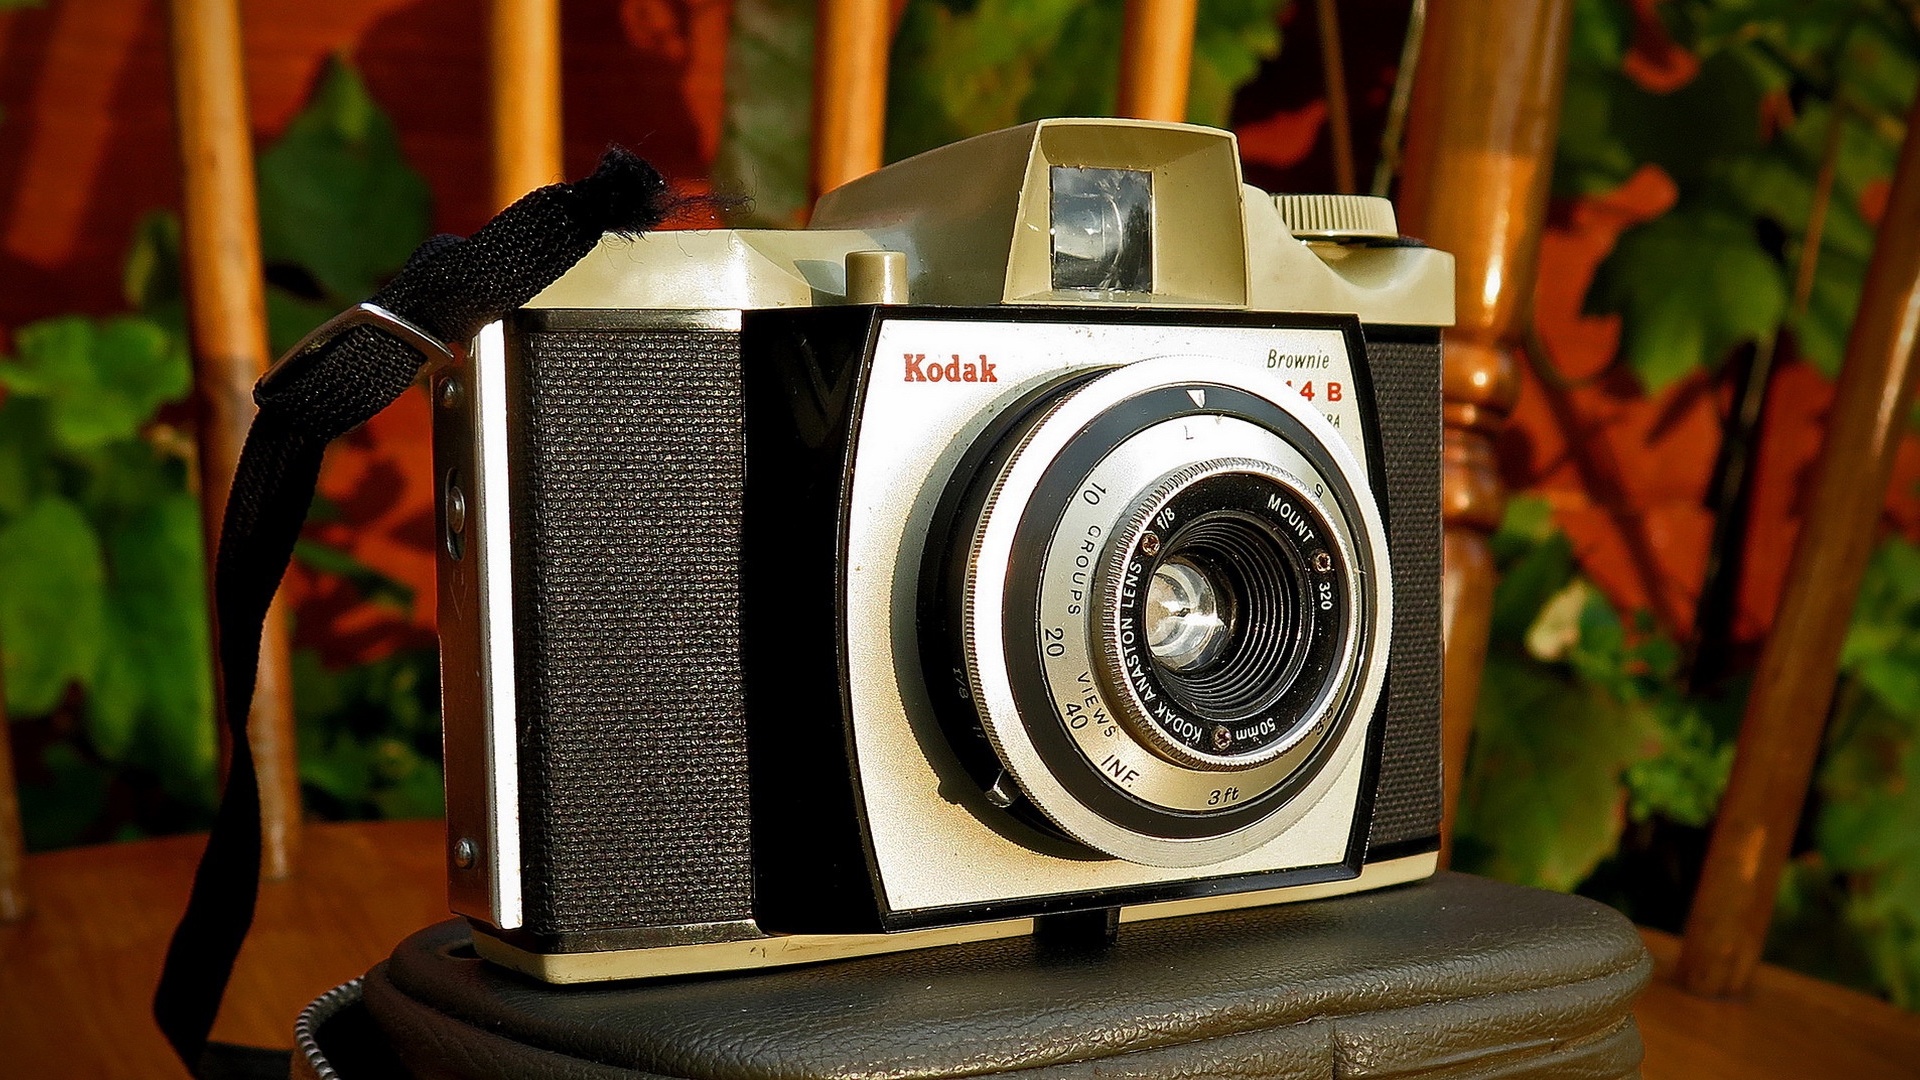 壁紙 1920x1080 レトロ クローズアップ Kodak カメラ ダウンロード 写真